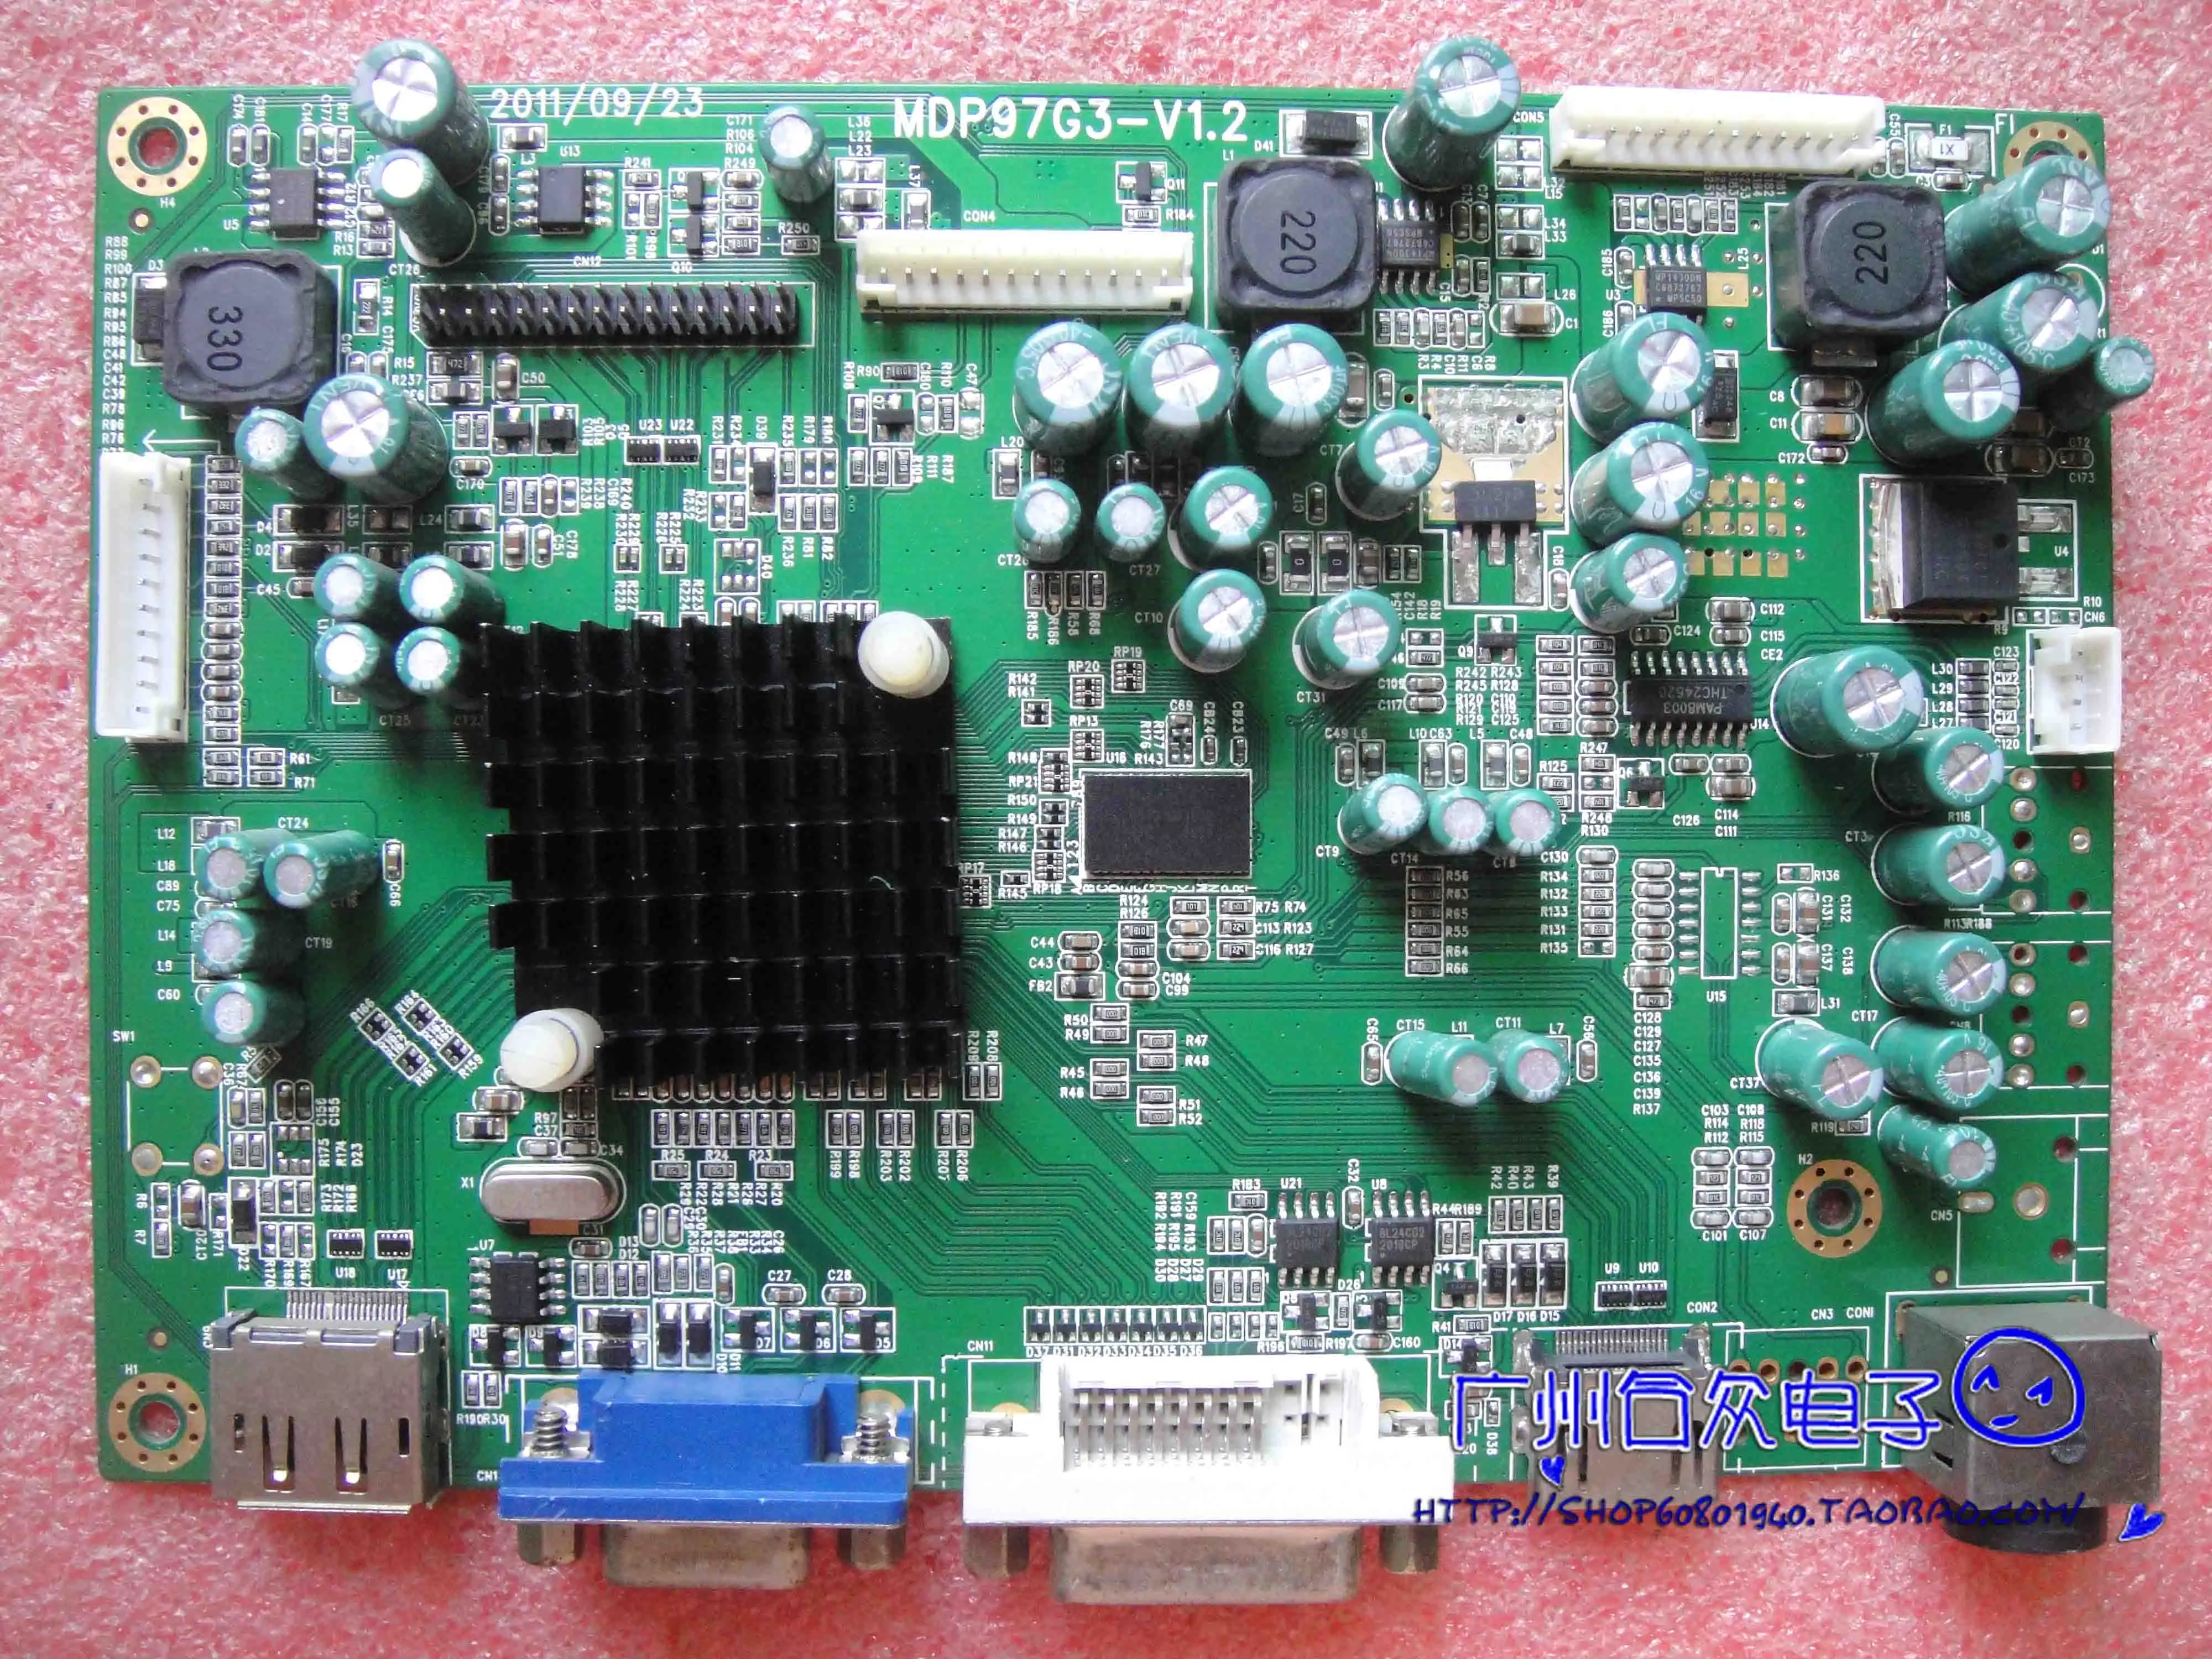 T7000+ Controlador de la Junta de 2723S Placa base MDP97G3-V1.2 con LG LM270WQ1 SDF1 2